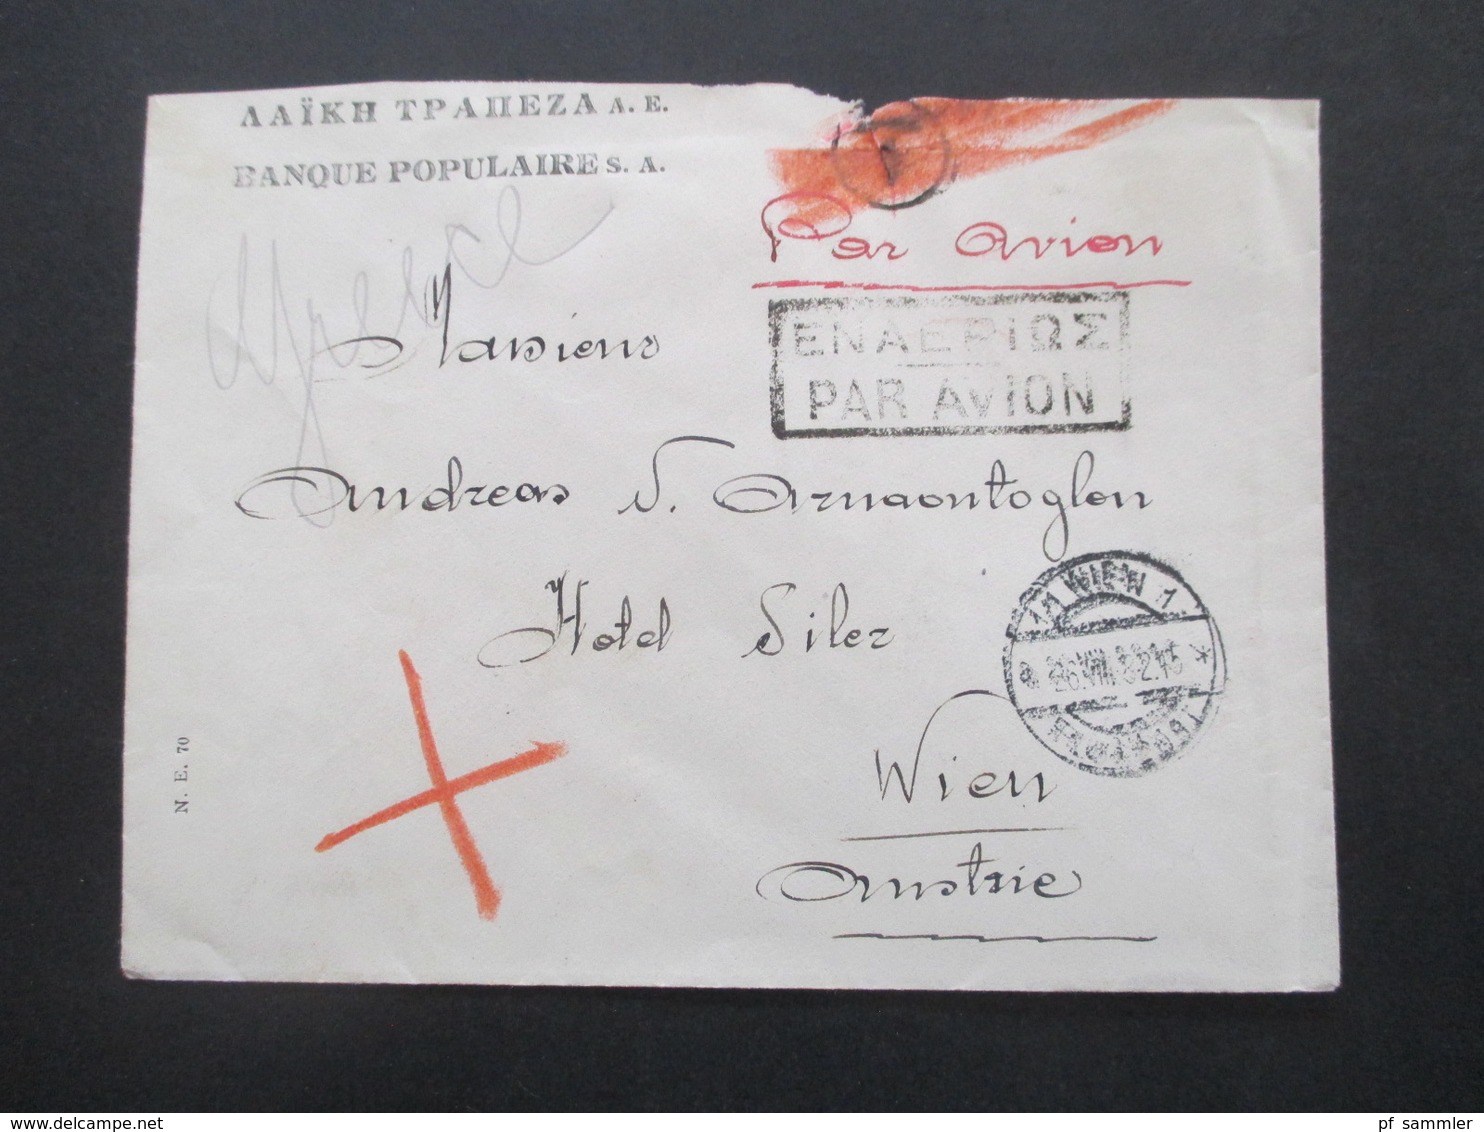 Griechenland 1932 Par Avion Luftpost Banque Populaires Nach Wien Mit Ank. Stempel Rücks. Nr. 350 (4) MeF - Lettres & Documents